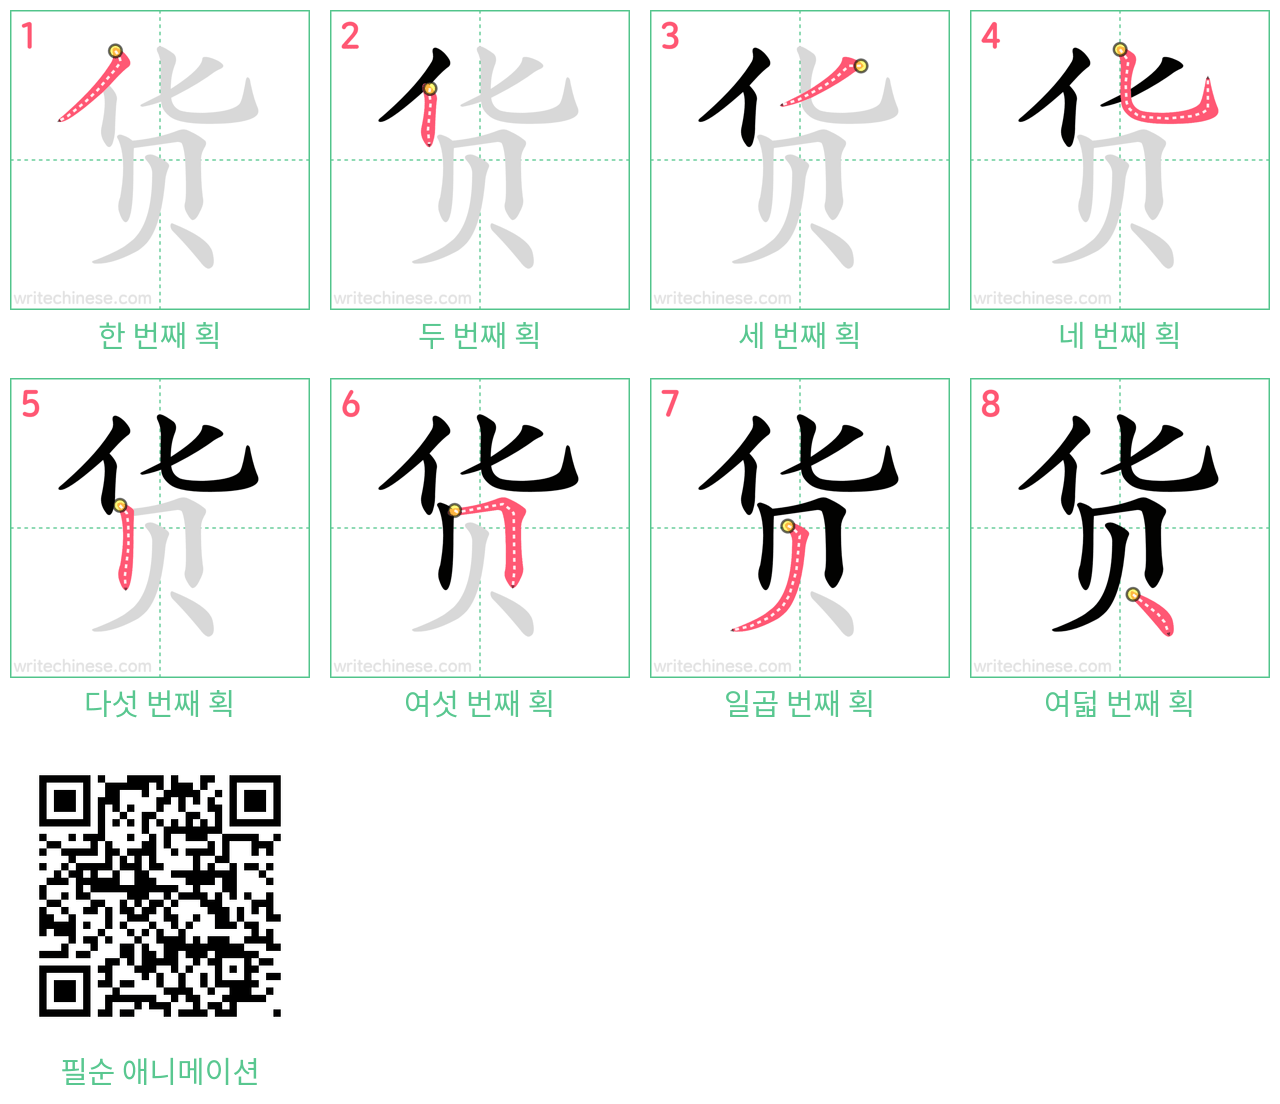 货 step-by-step stroke order diagrams